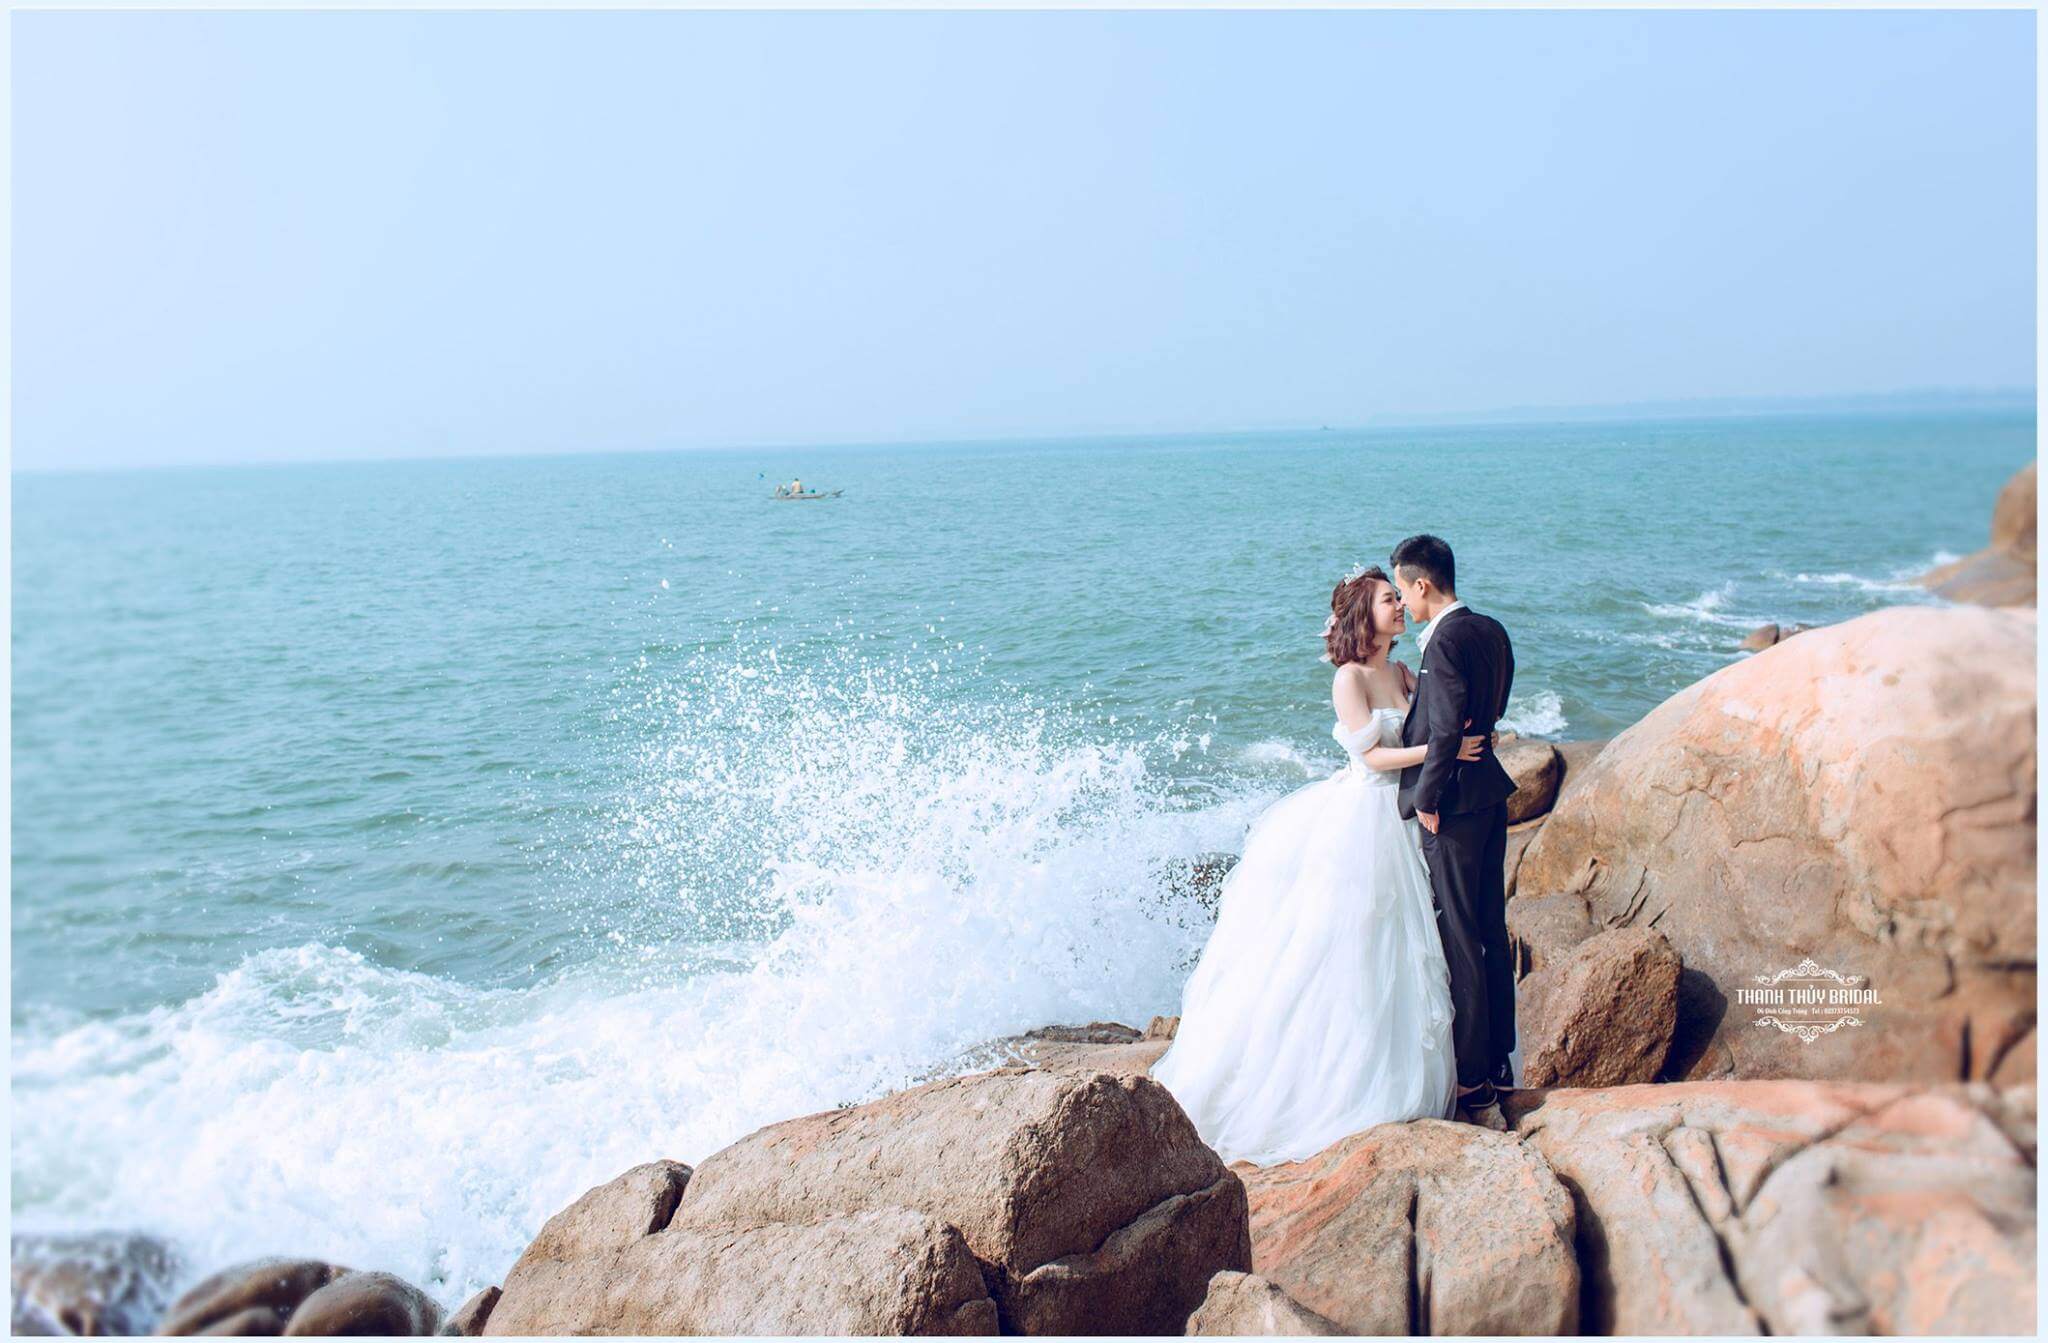 chụp ảnh cưới đẹp tại biển sầm sơn